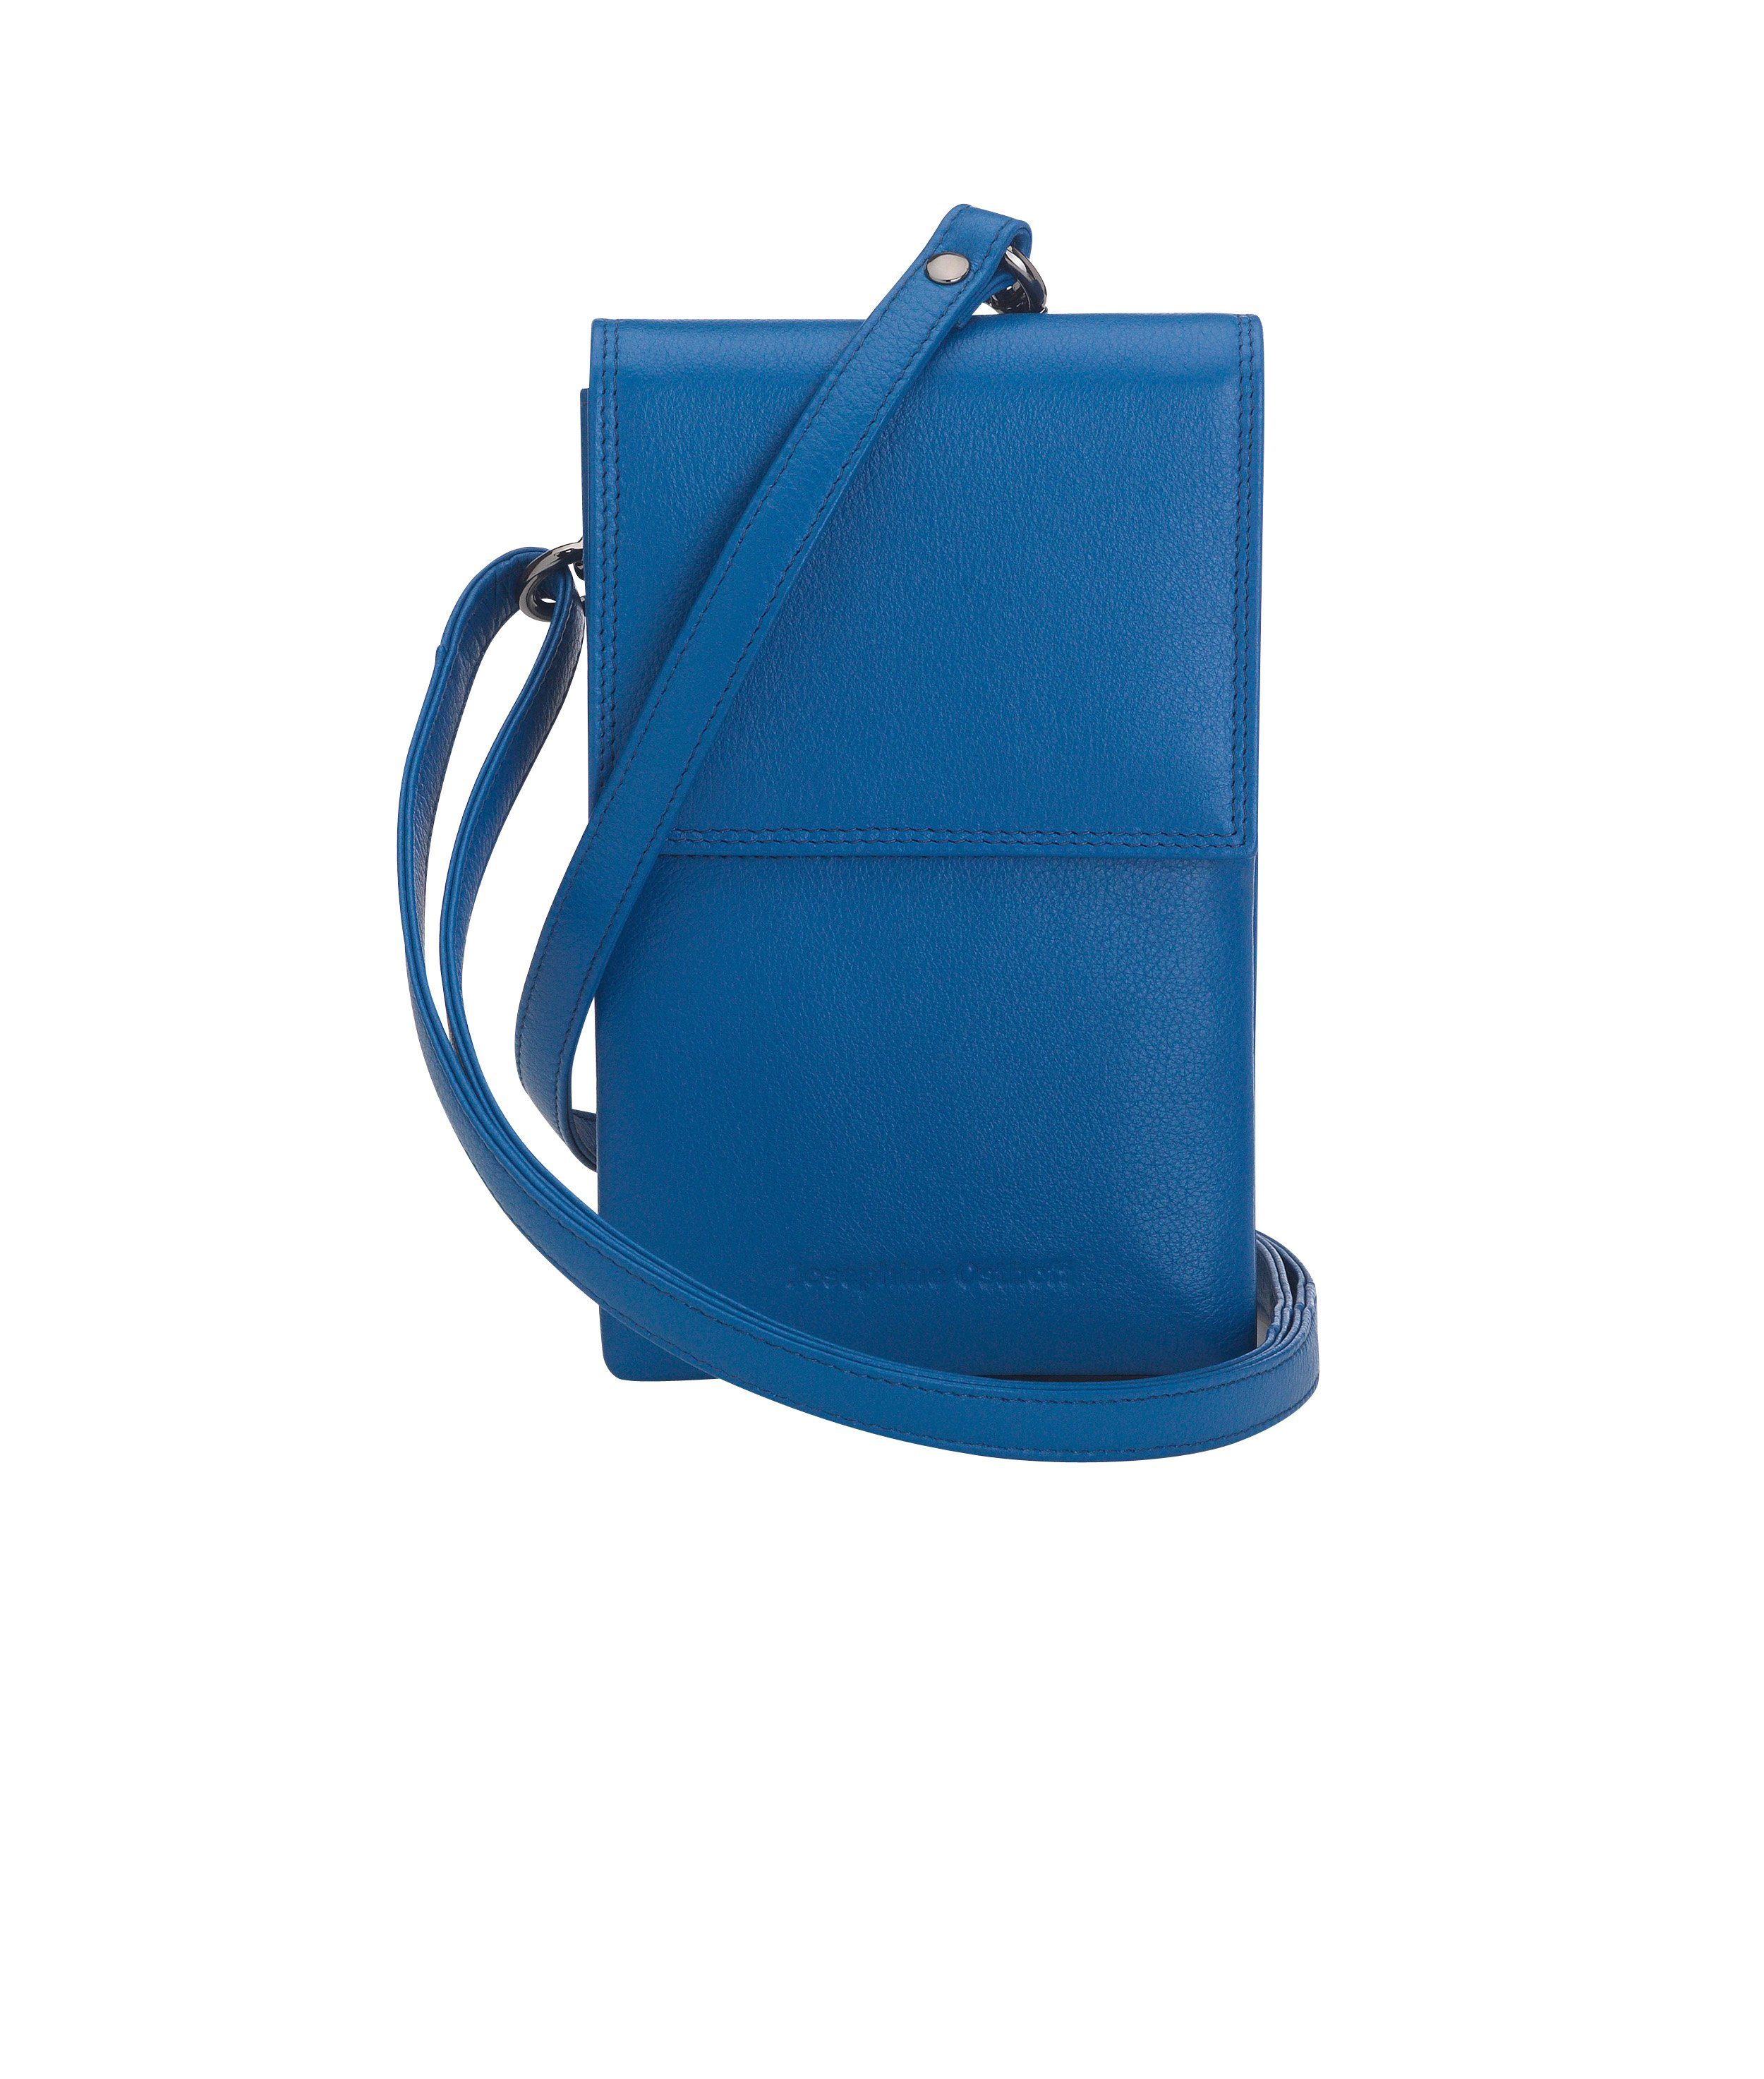 Blaue Damenhandtaschen online kaufen | OTTO